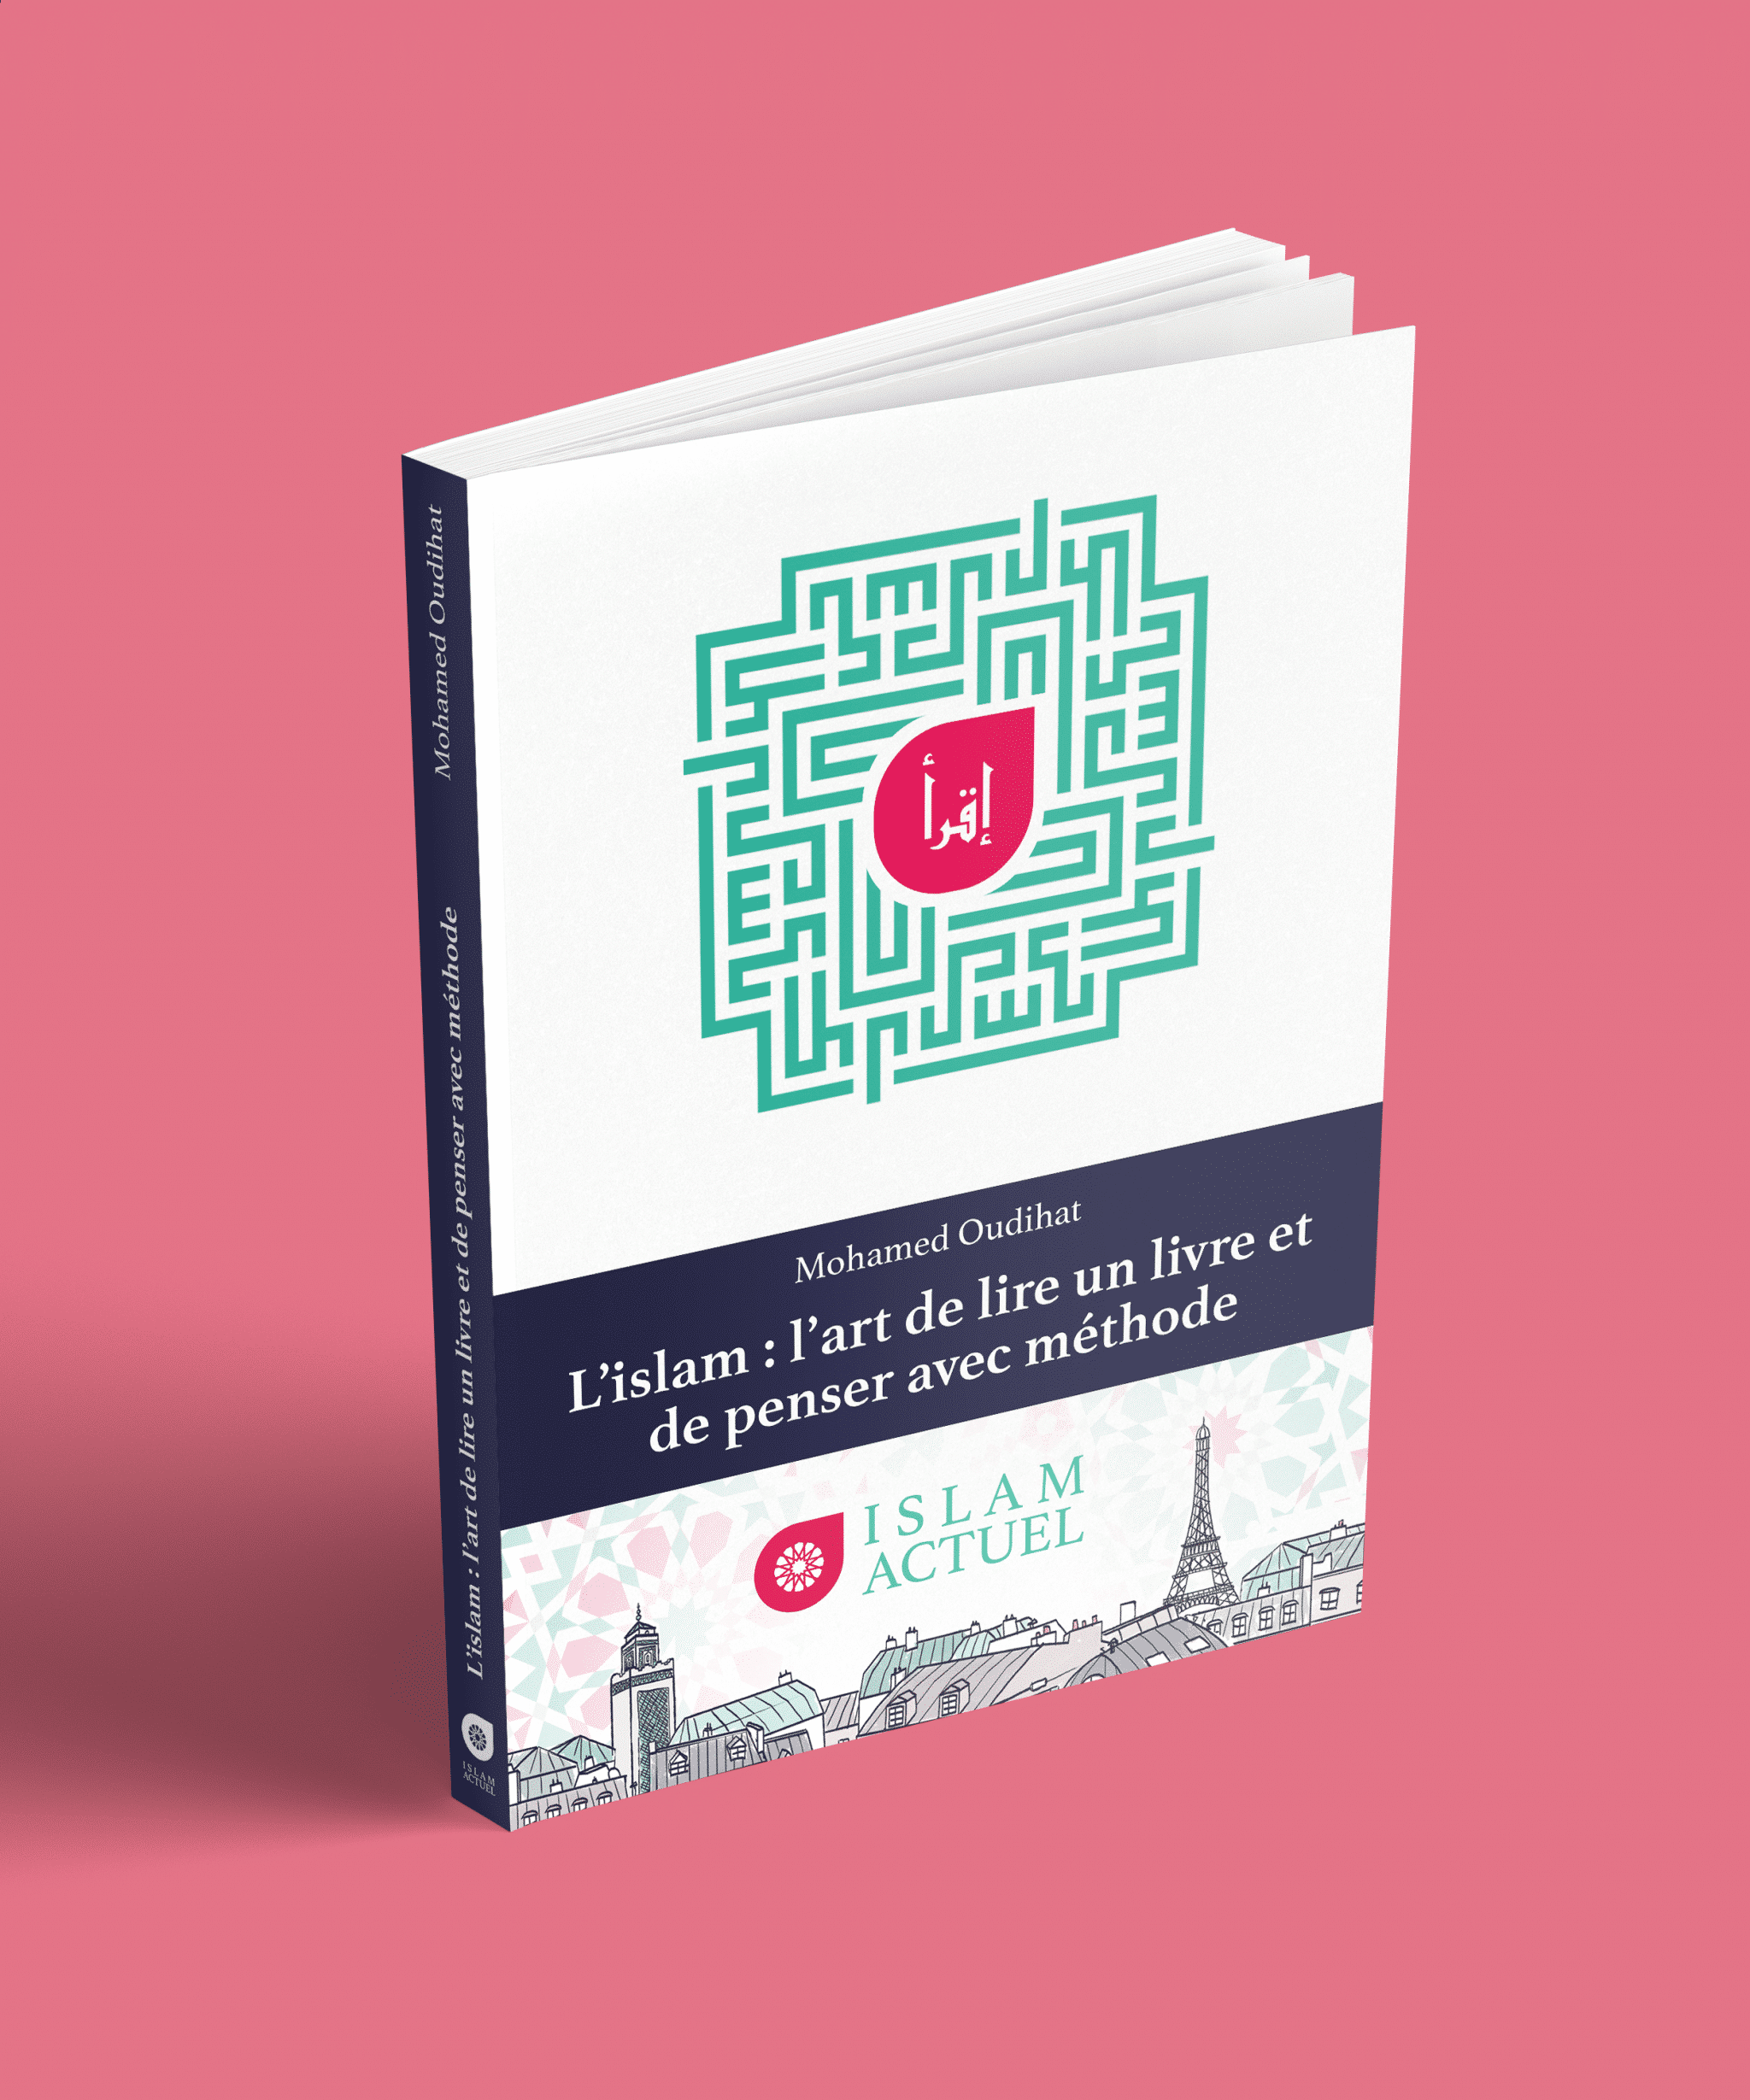 Featured image for “Nouvelle publication : L’islam, l’art de lire un livre et  de penser avec méthode”